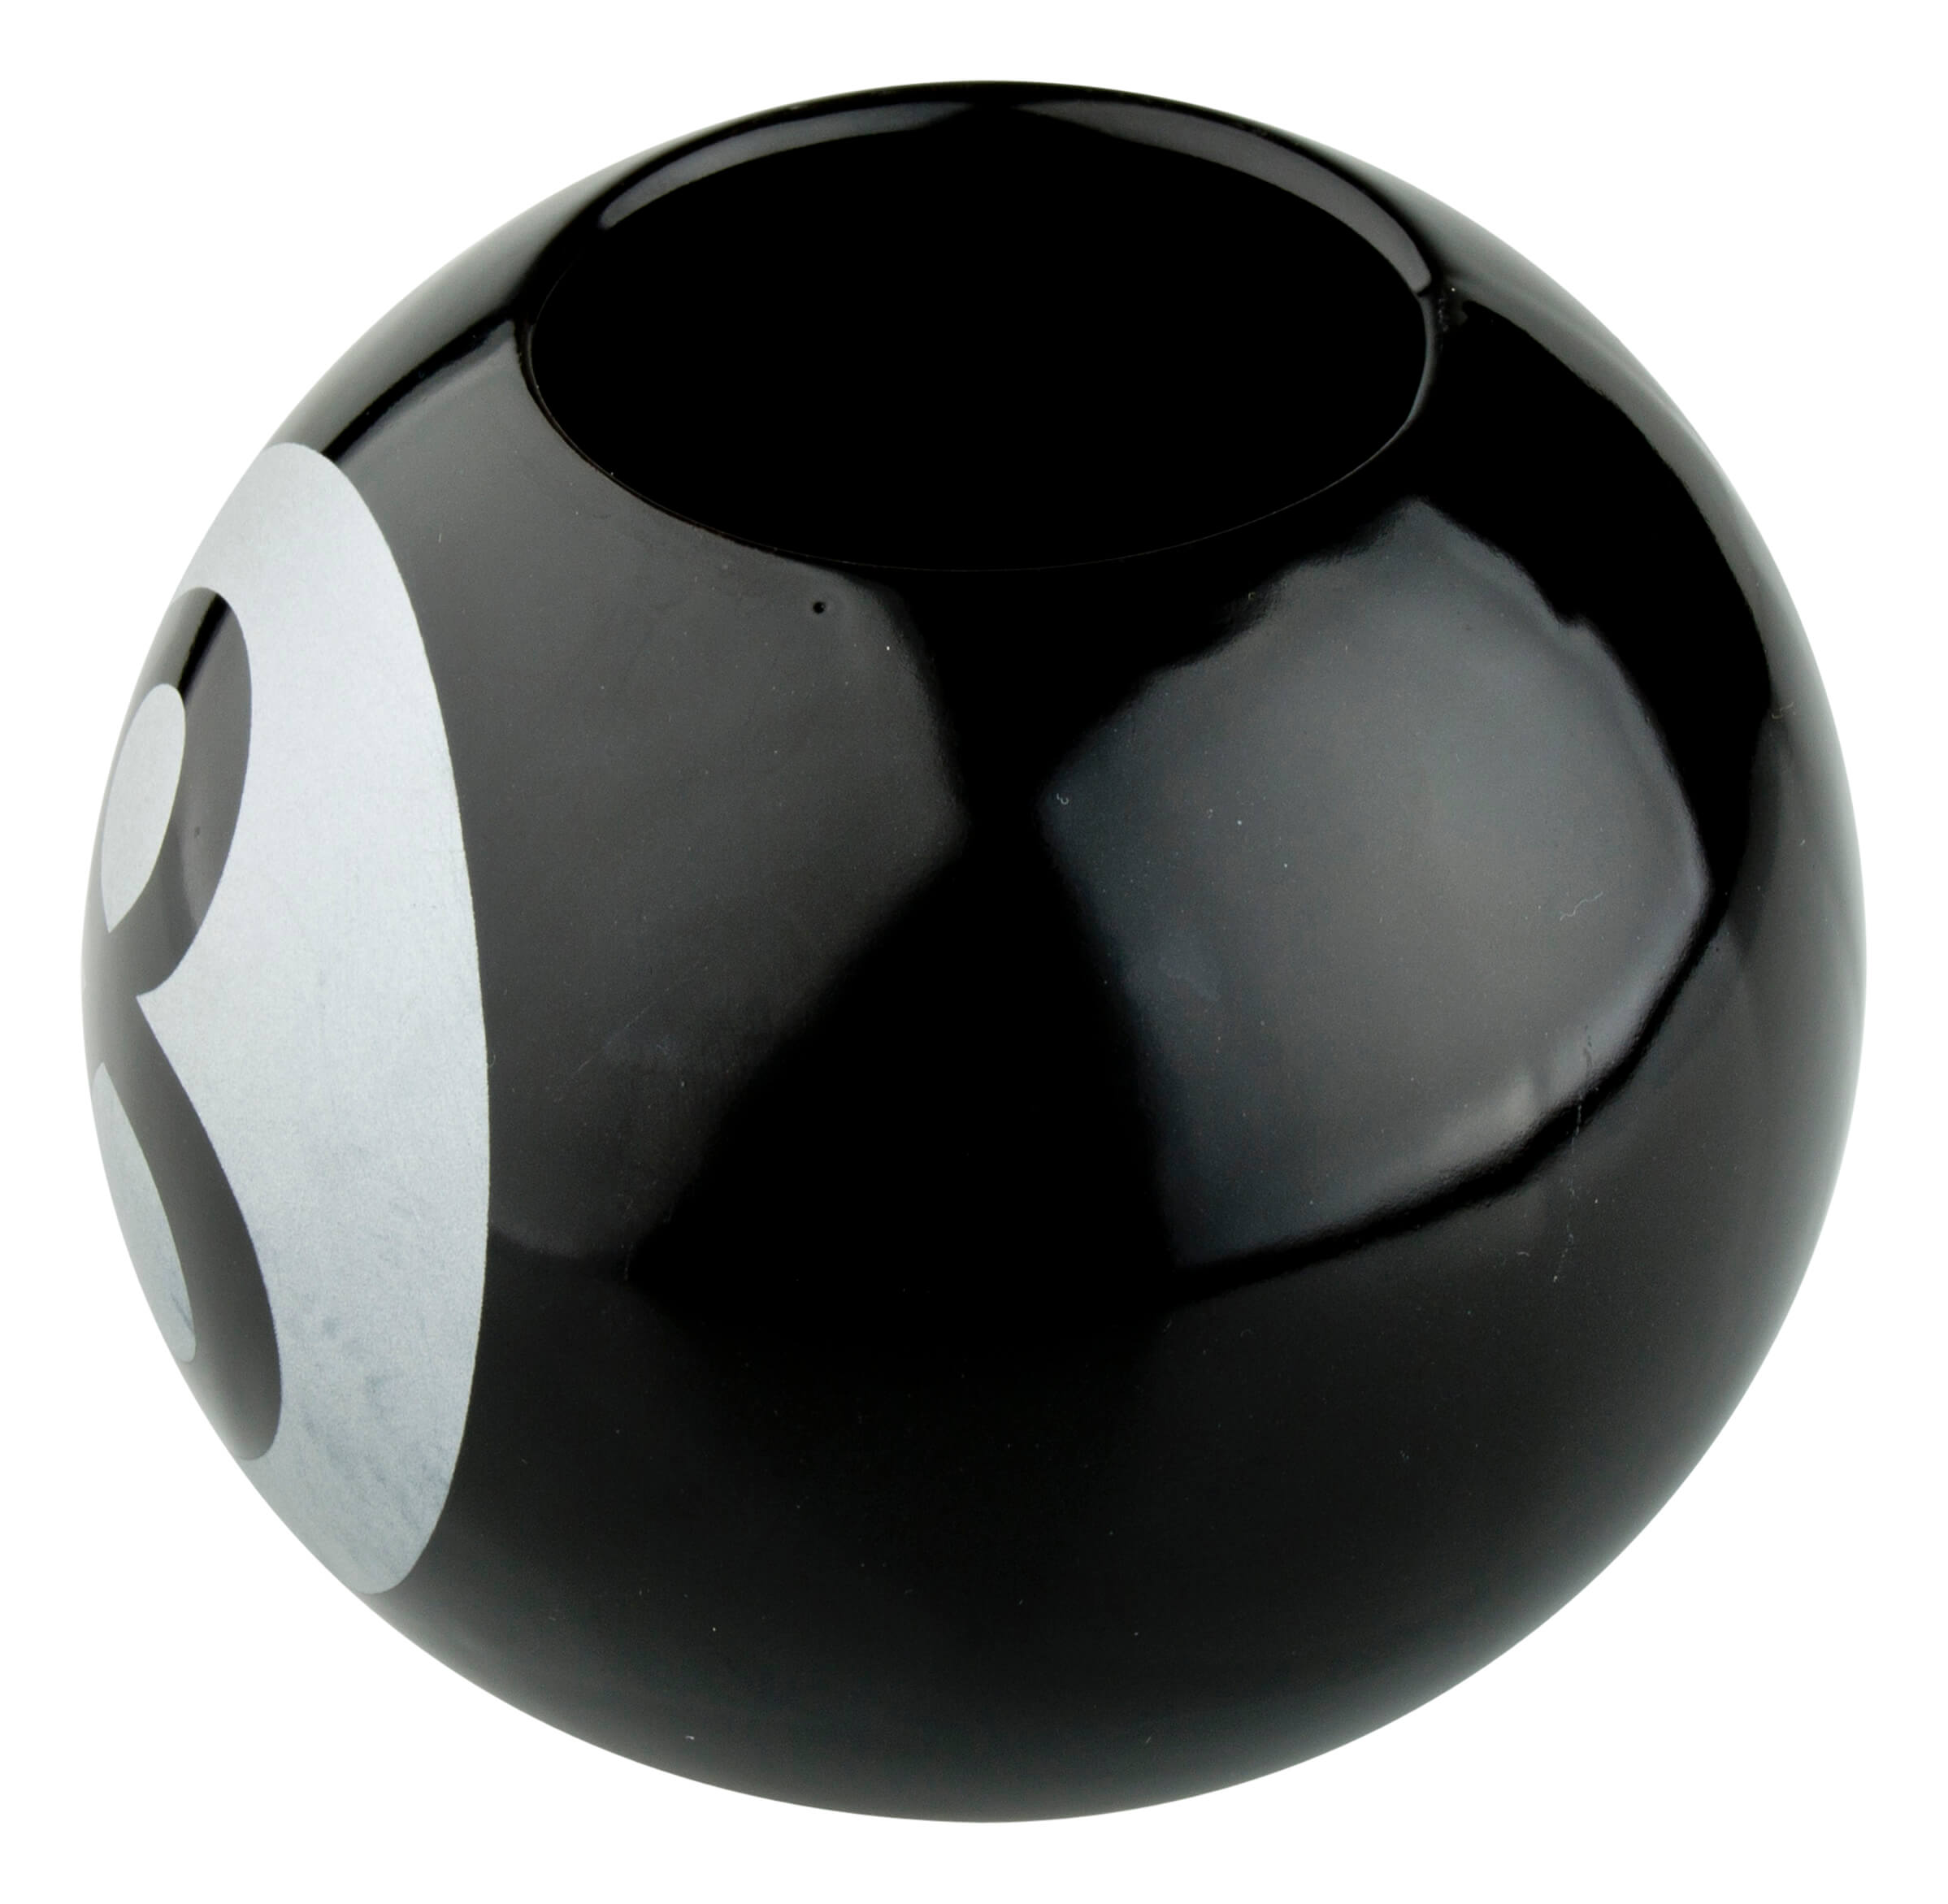 Tiki mug 8-Ball - 540ml